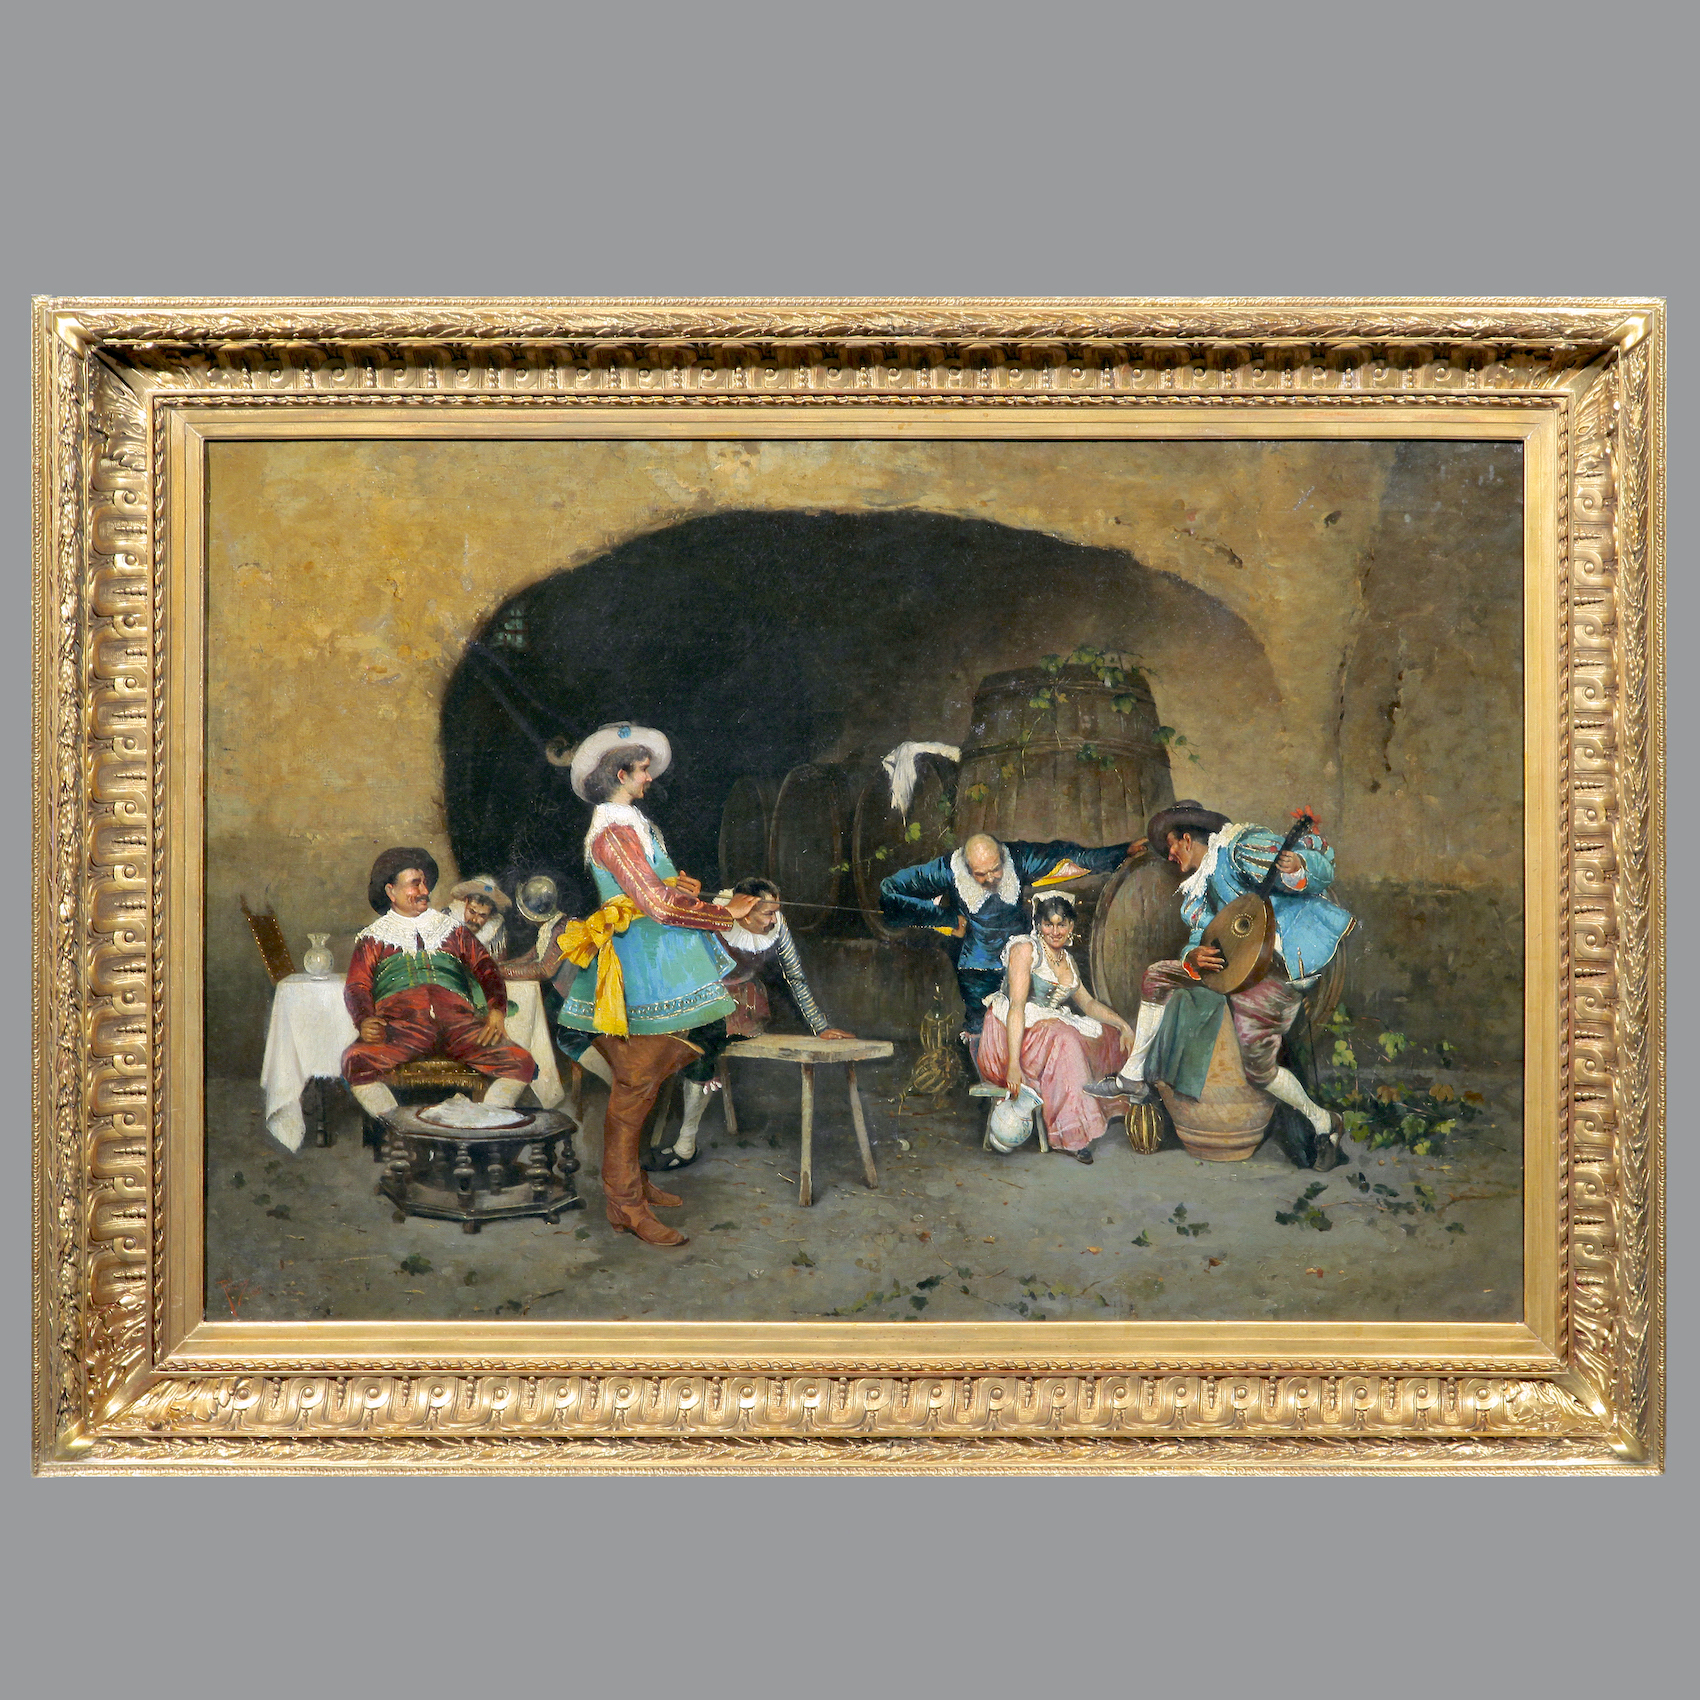  Парные живописные жанровые сцены: «Веселье в таверне». Автор - Франческо Пелузо